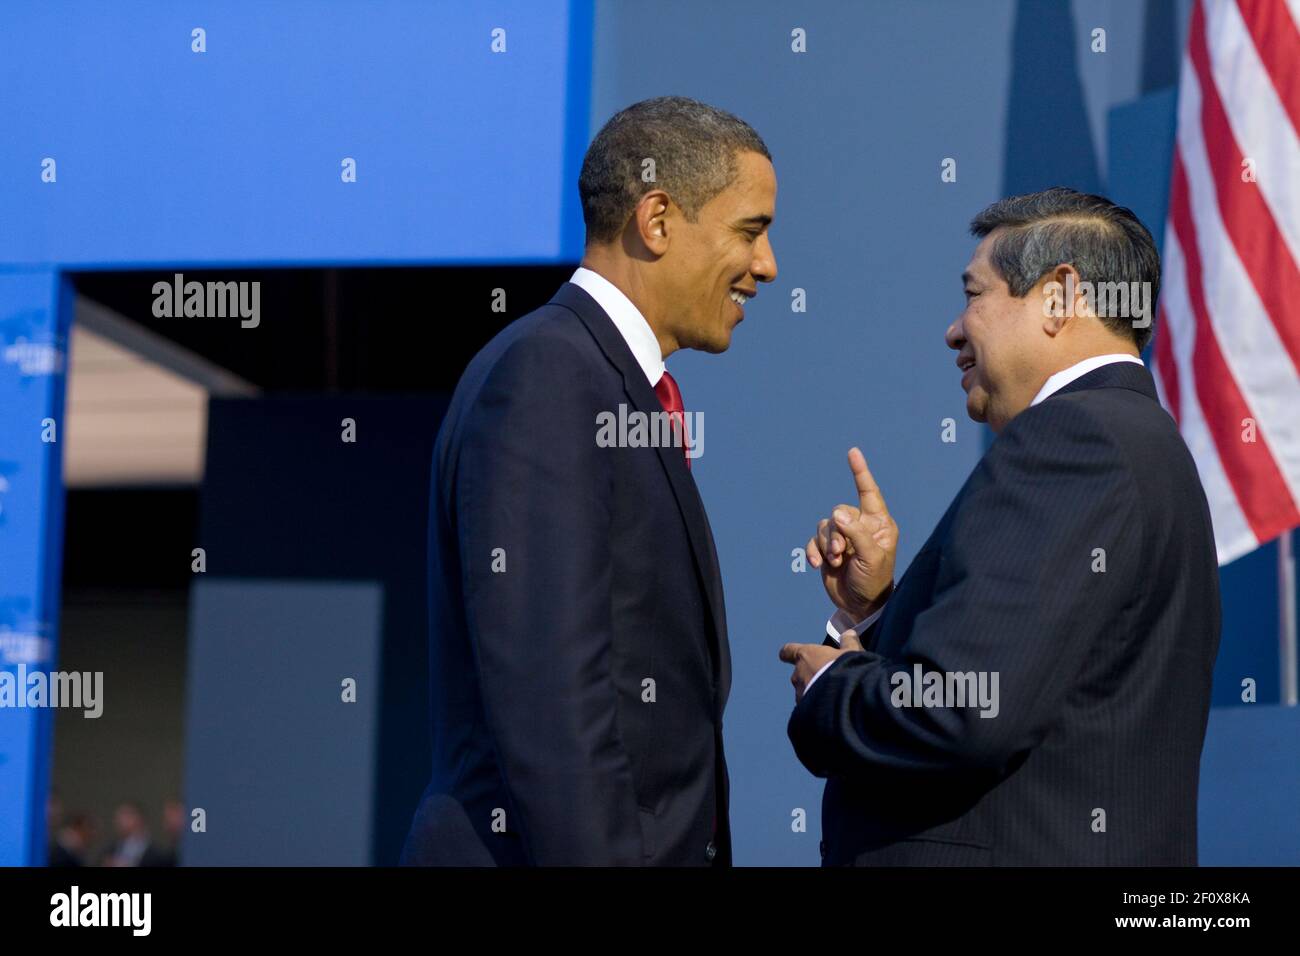 El presidente Barack Obama conversó con el presidente indonesio, Dr. Susilo Bambang Yudhoyono, durante la Cumbre del G-20 en Pittsburgh en el David L. Lawrence Convention Center en Pittsburgh, Pensilvania, 25 de septiembre de 2009 Foto de stock